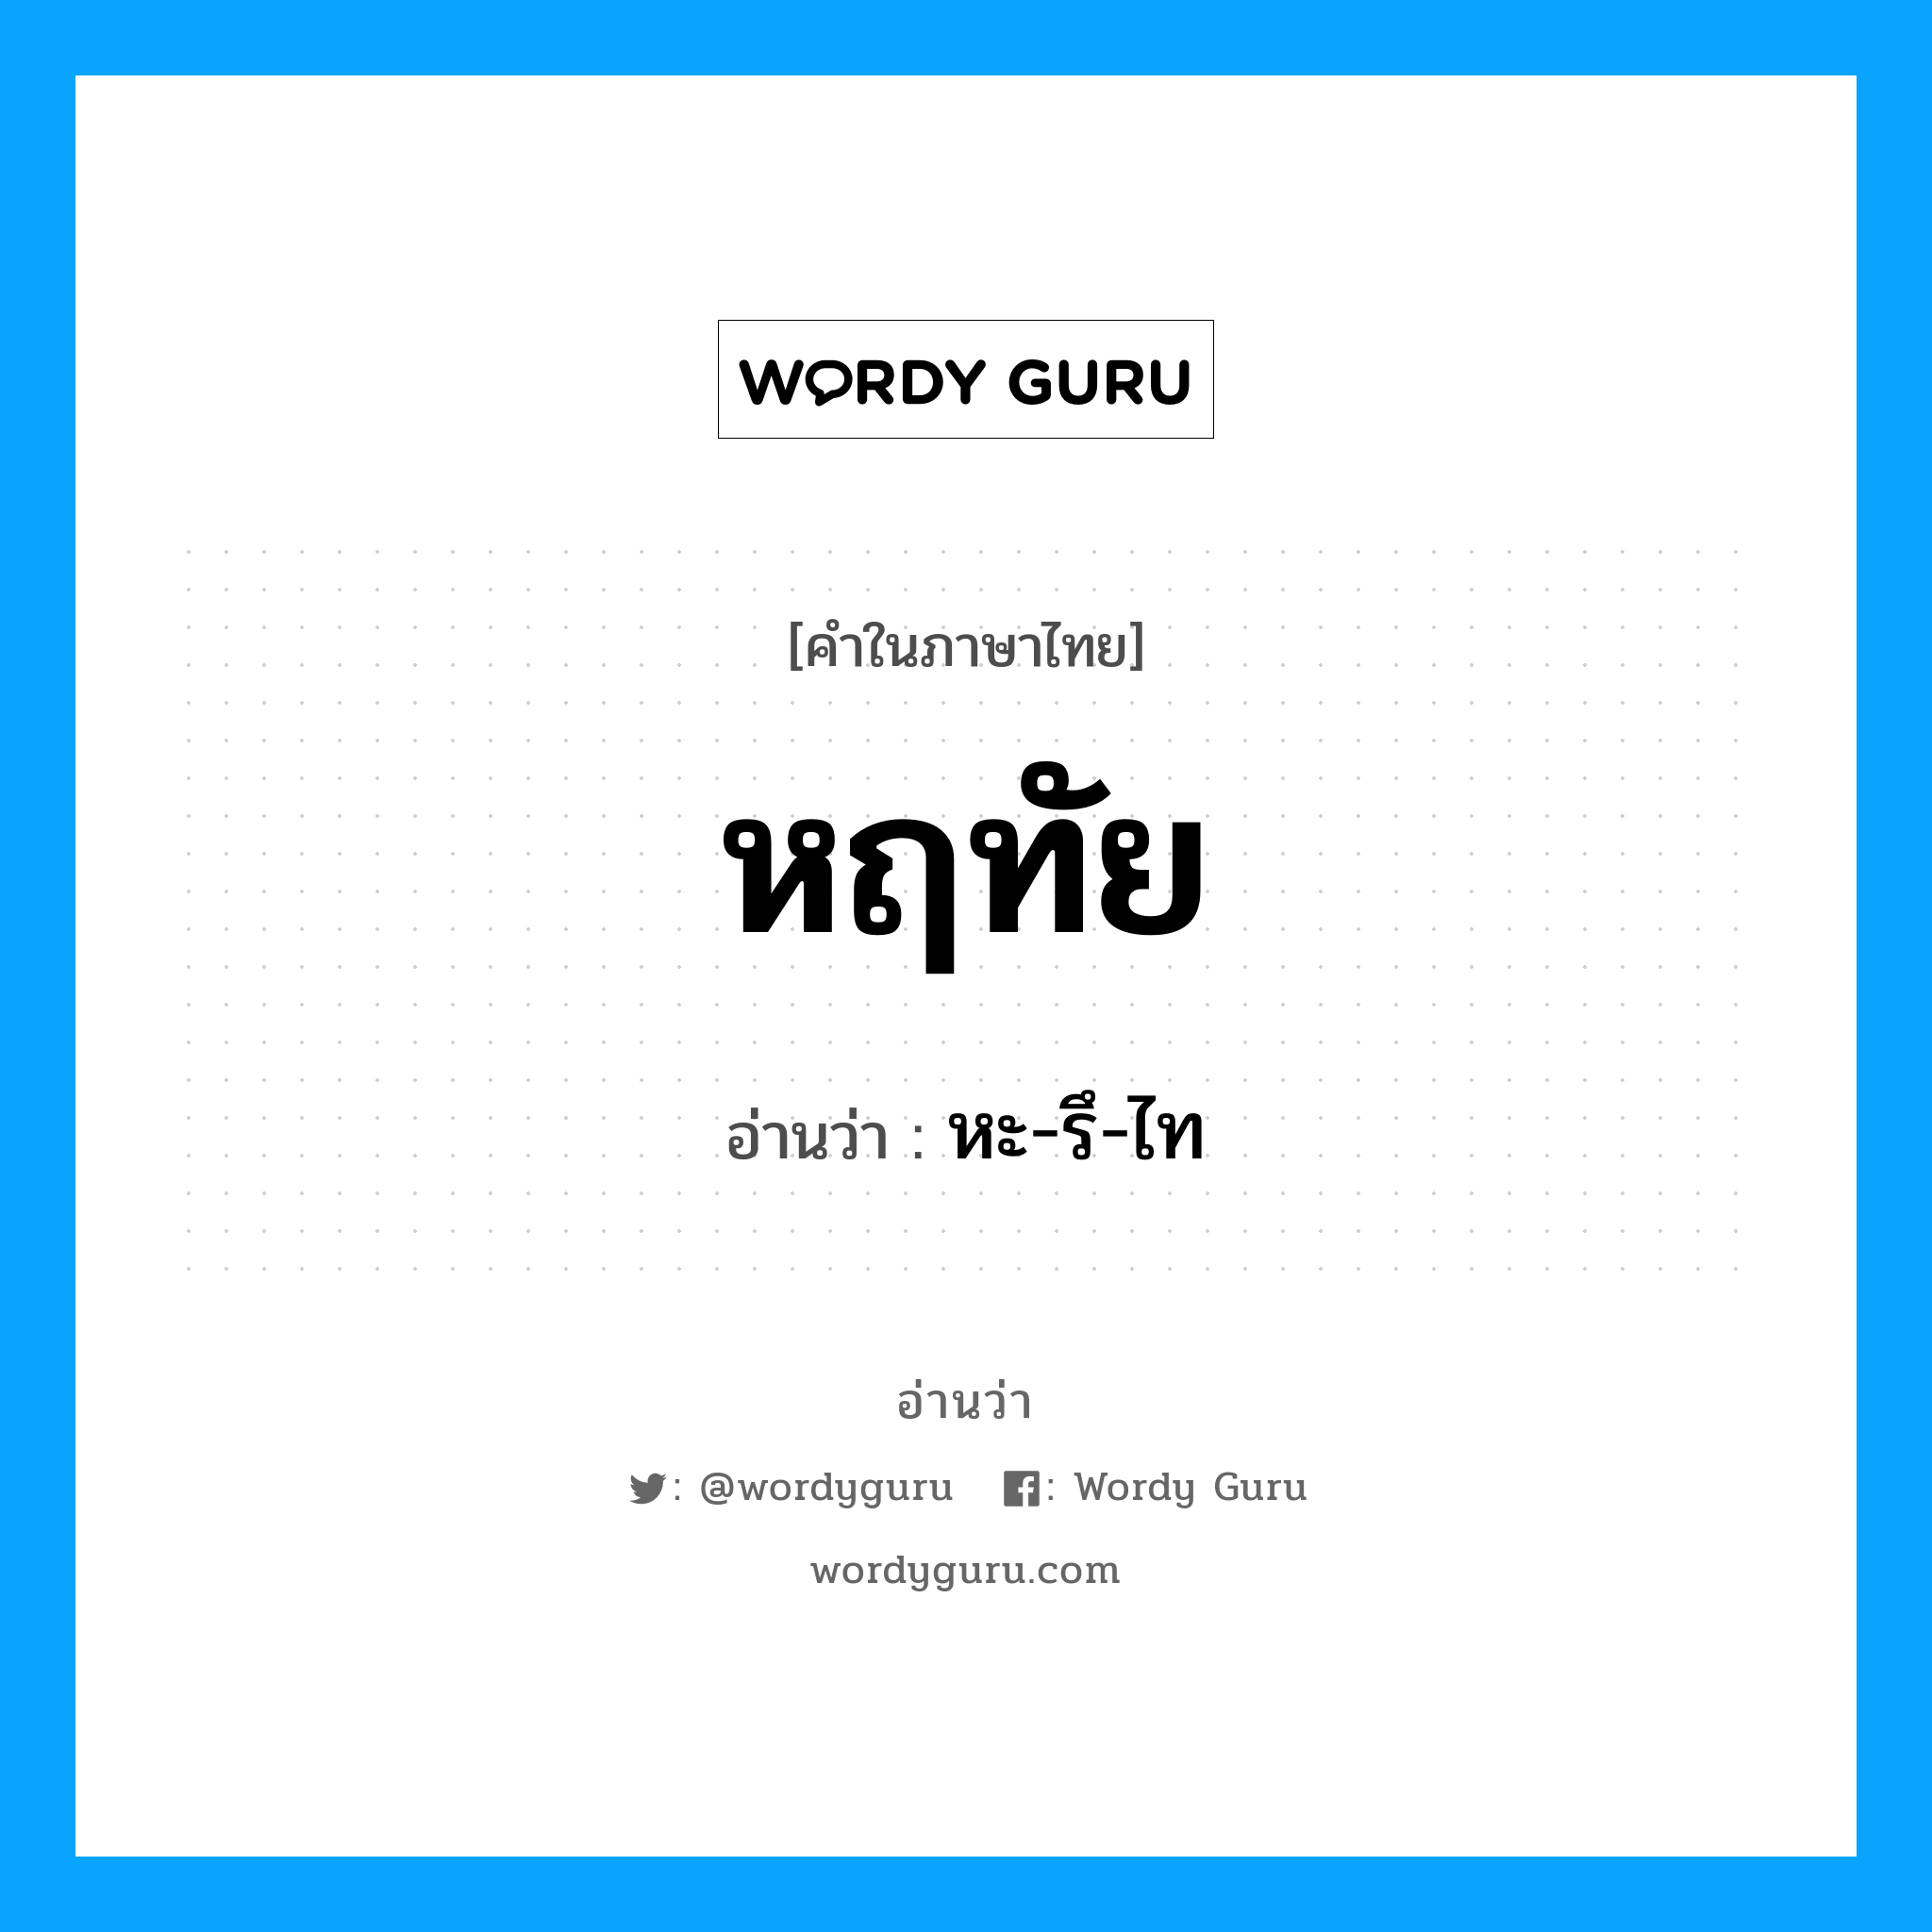 หะ-รึ-ไท เป็นคำอ่านของคำไหน?, คำในภาษาไทย หะ-รึ-ไท อ่านว่า หฤทัย